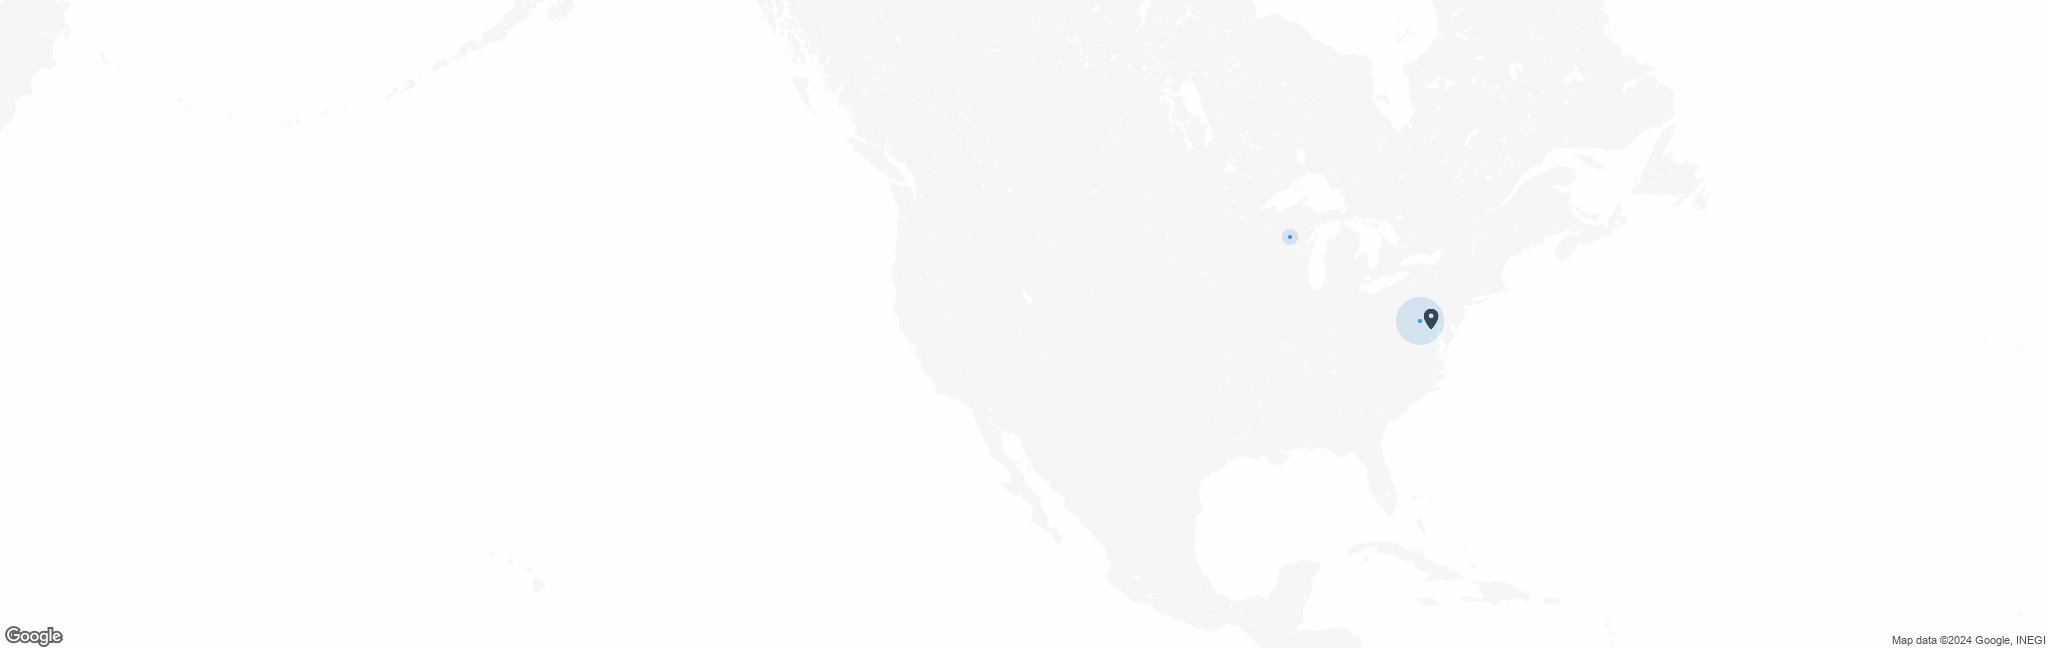 Map of US with pin of Kakenya&#39;s Dream (Kakenya Center for Excellence) location